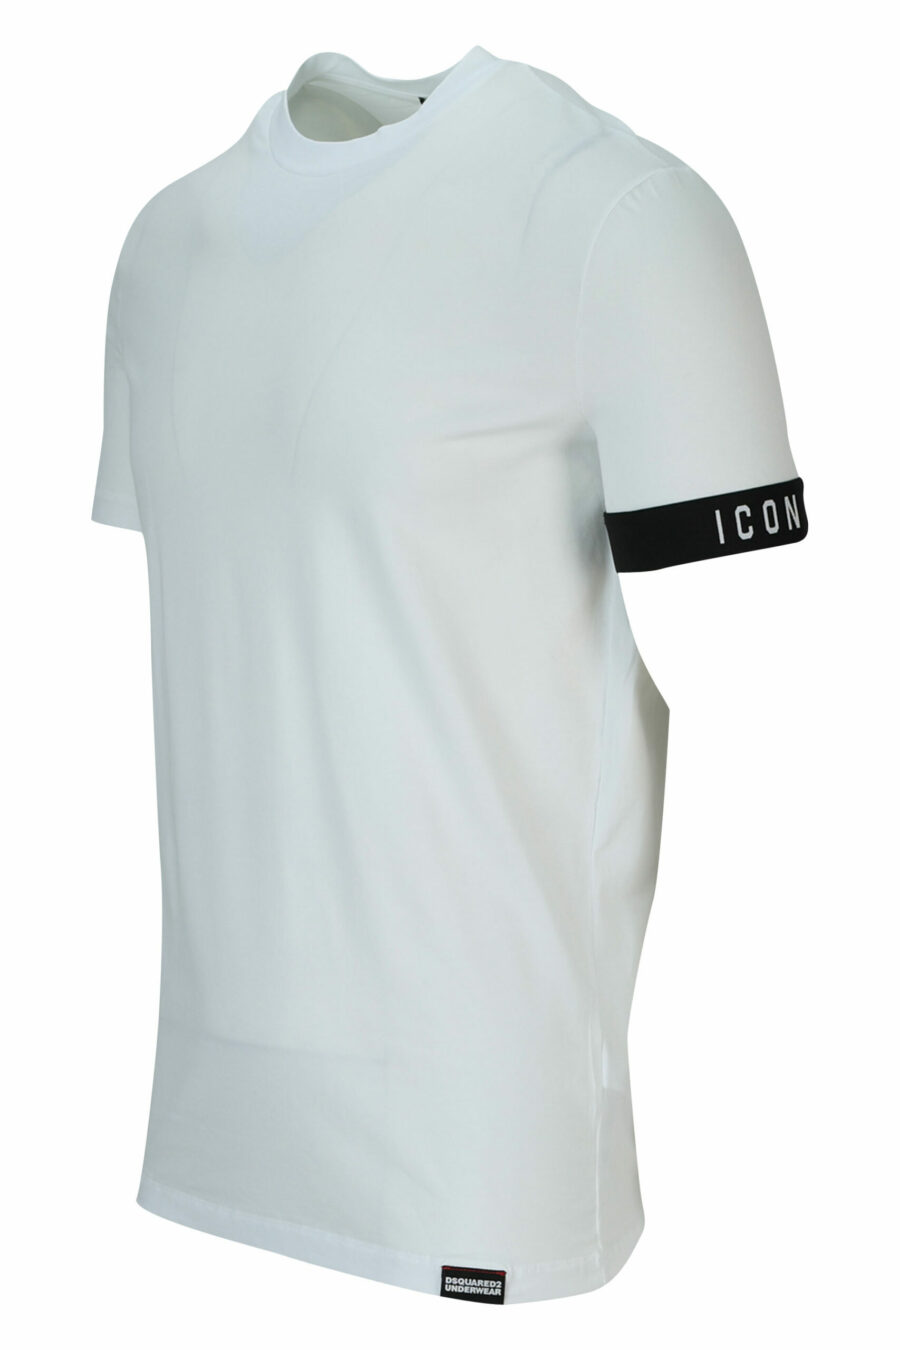 T-shirt branca com logótipo preto - 8032674767493 1 scaled